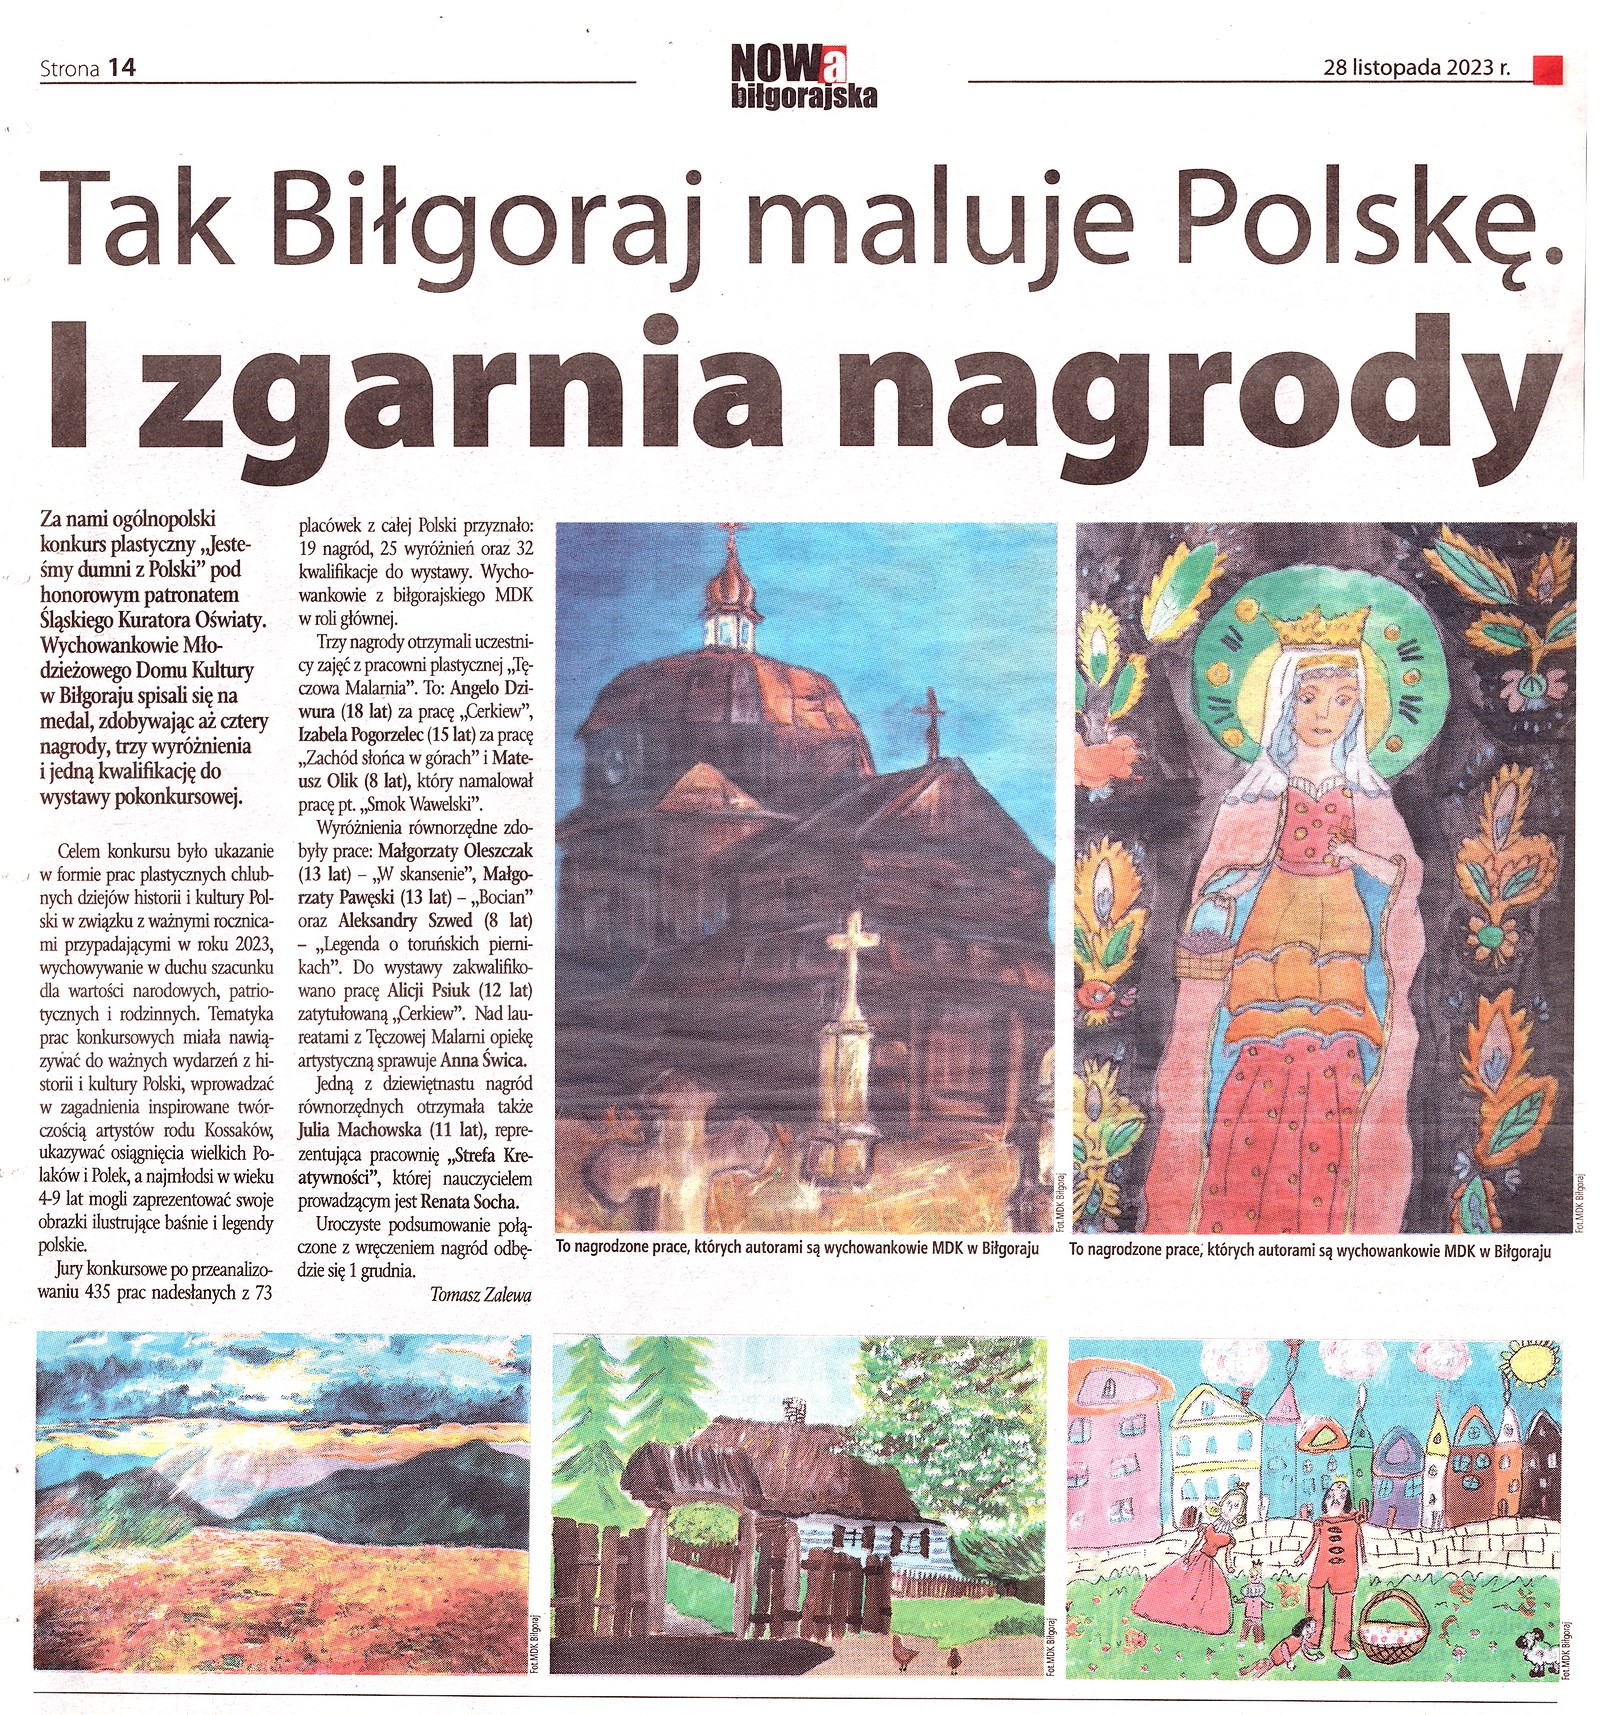 Tak Biłgoraj maluje Polskę. I zgania nagrody - Nowa Biłgorajska, 28 listopada 2023 r.